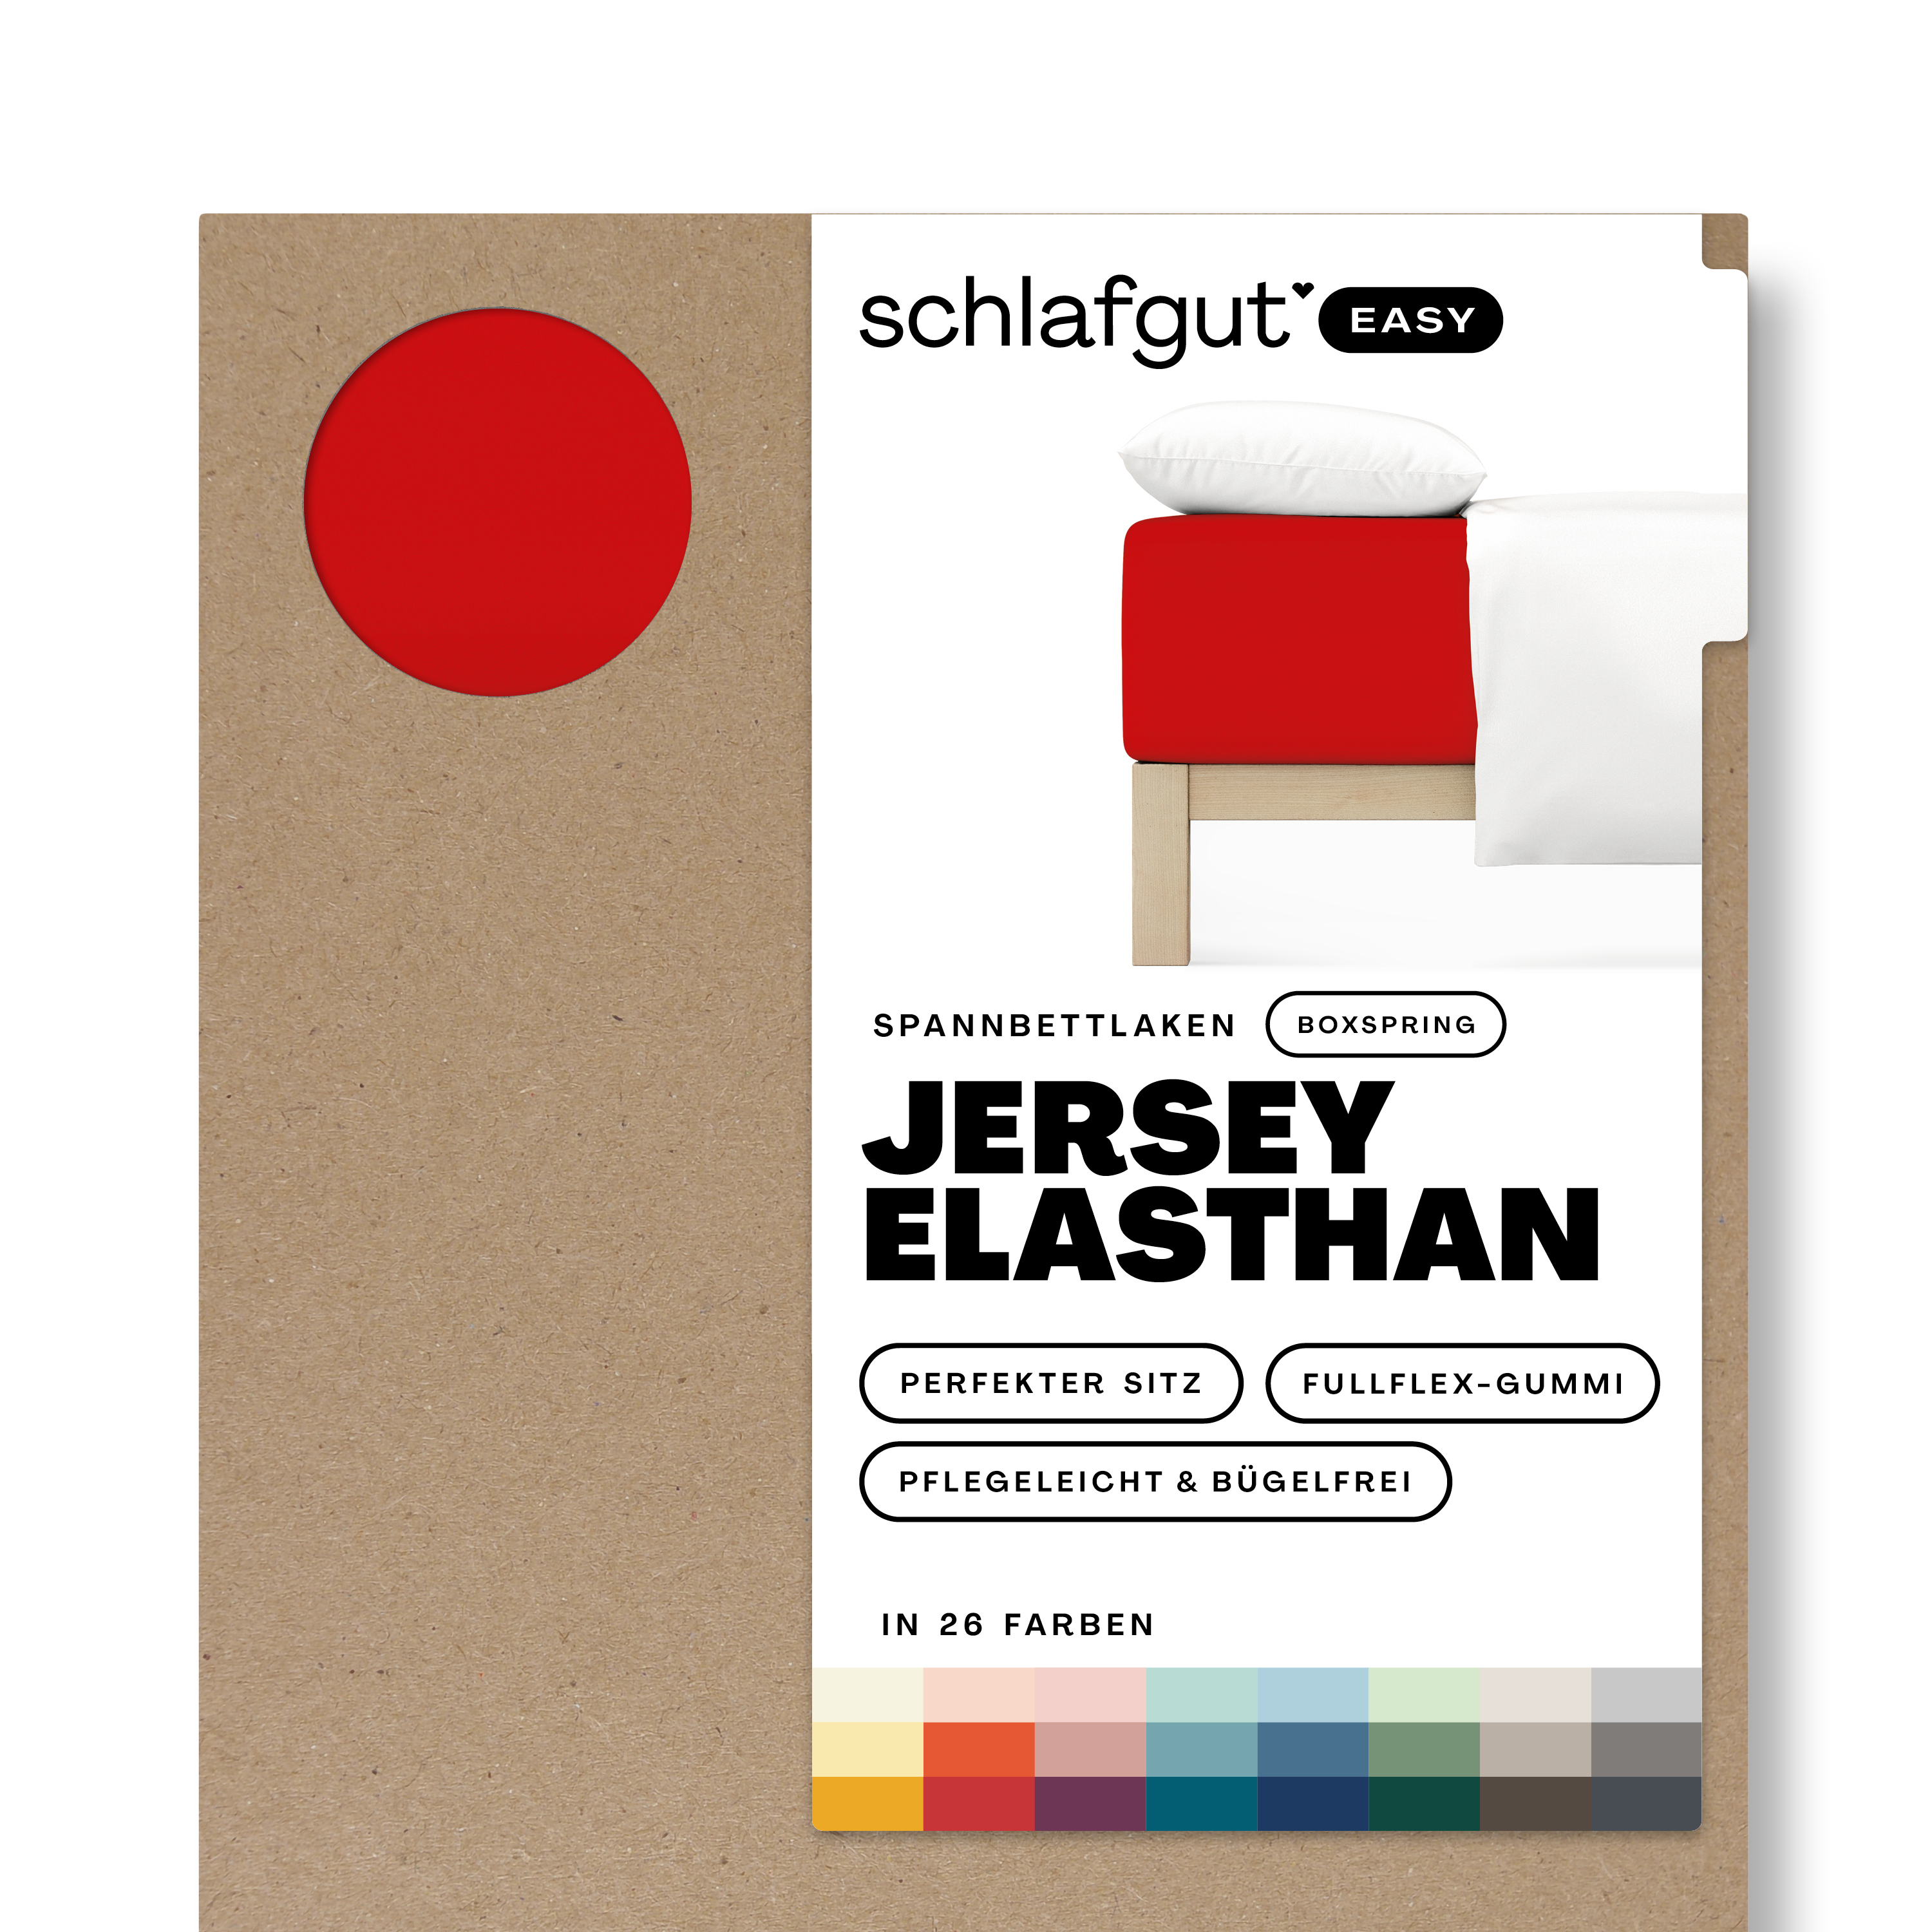 Das Produktbild vom Spannbettlaken der Reihe Easy Elasthan Boxspring in Farbe red deep von Schlafgut